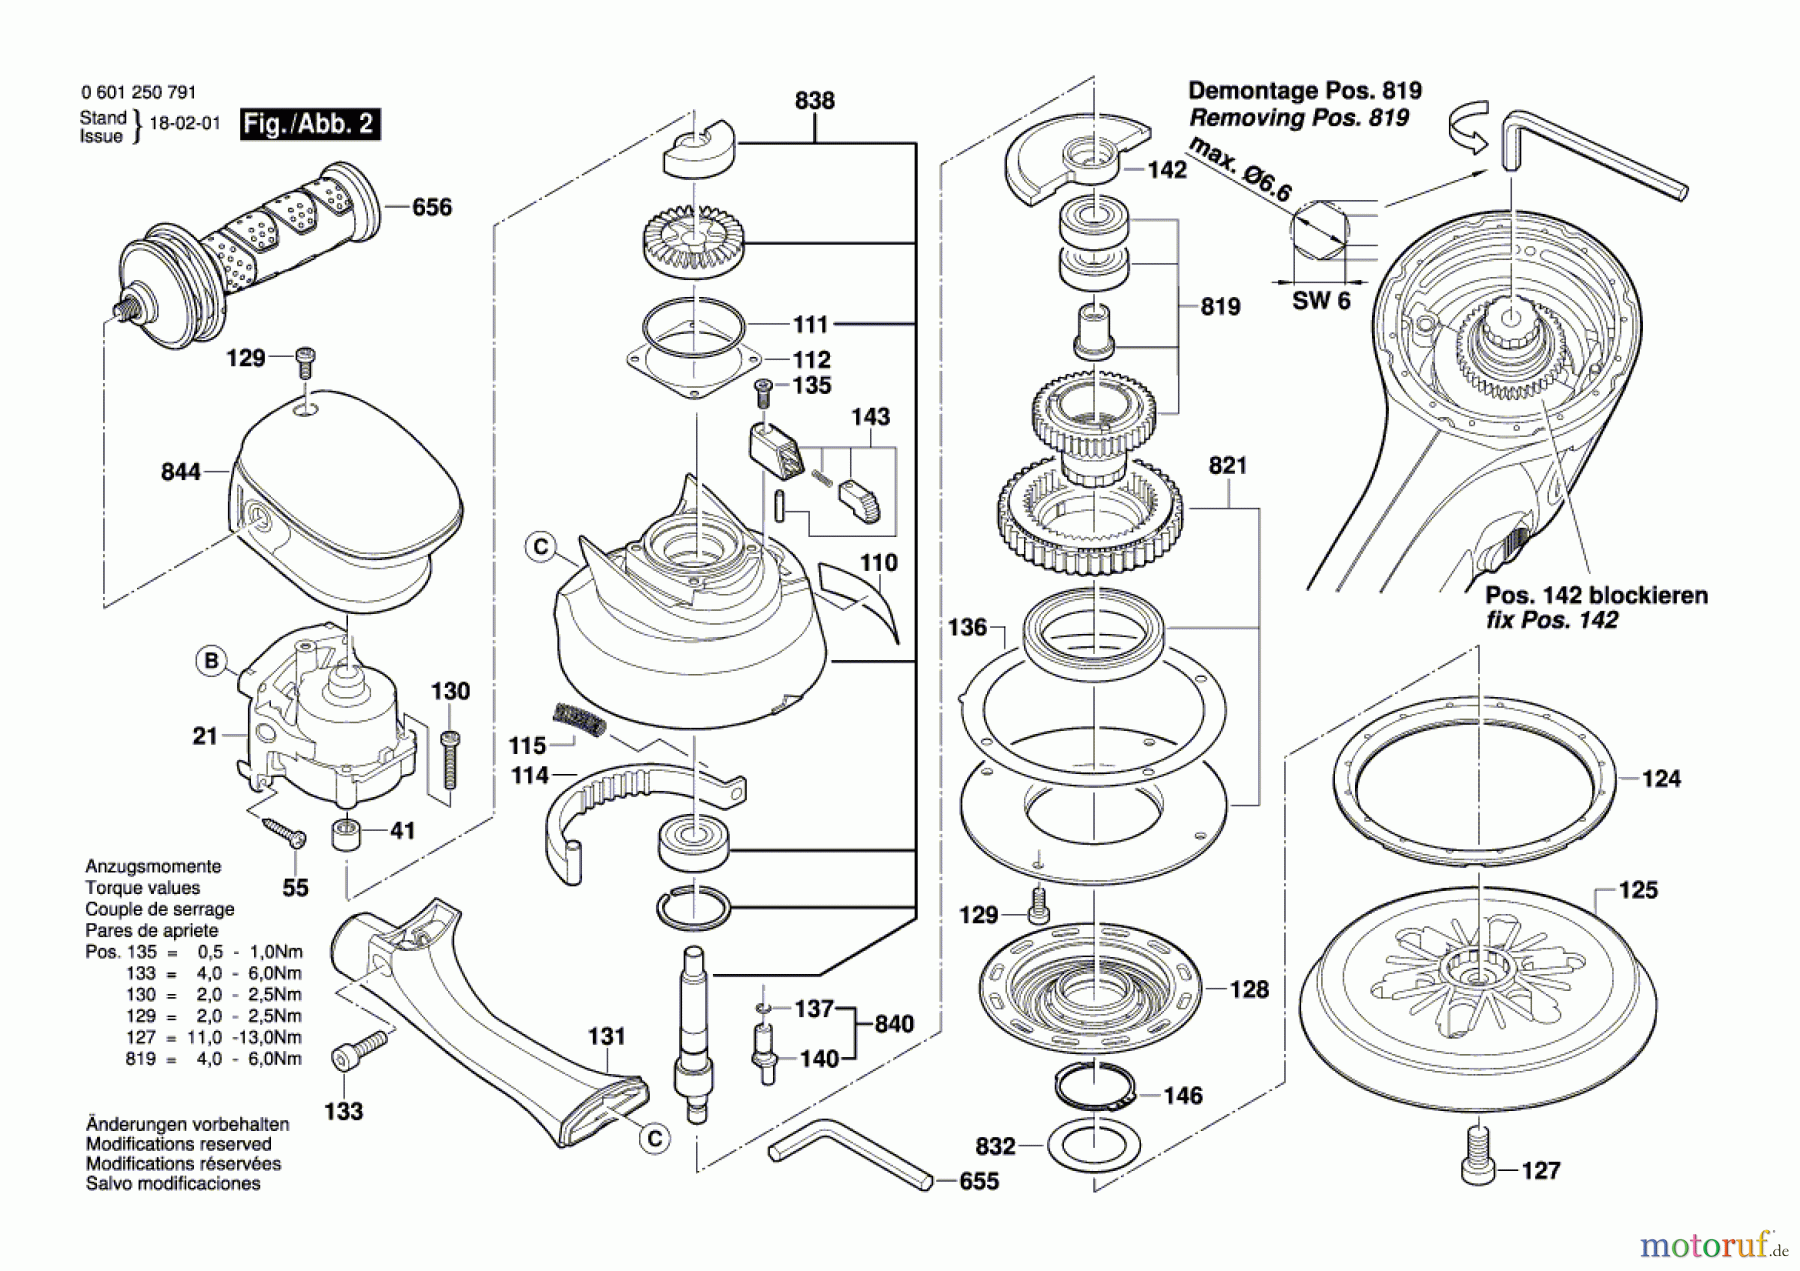  Bosch Werkzeug Exzenterschleifer GEX 150 TURBO Seite 2